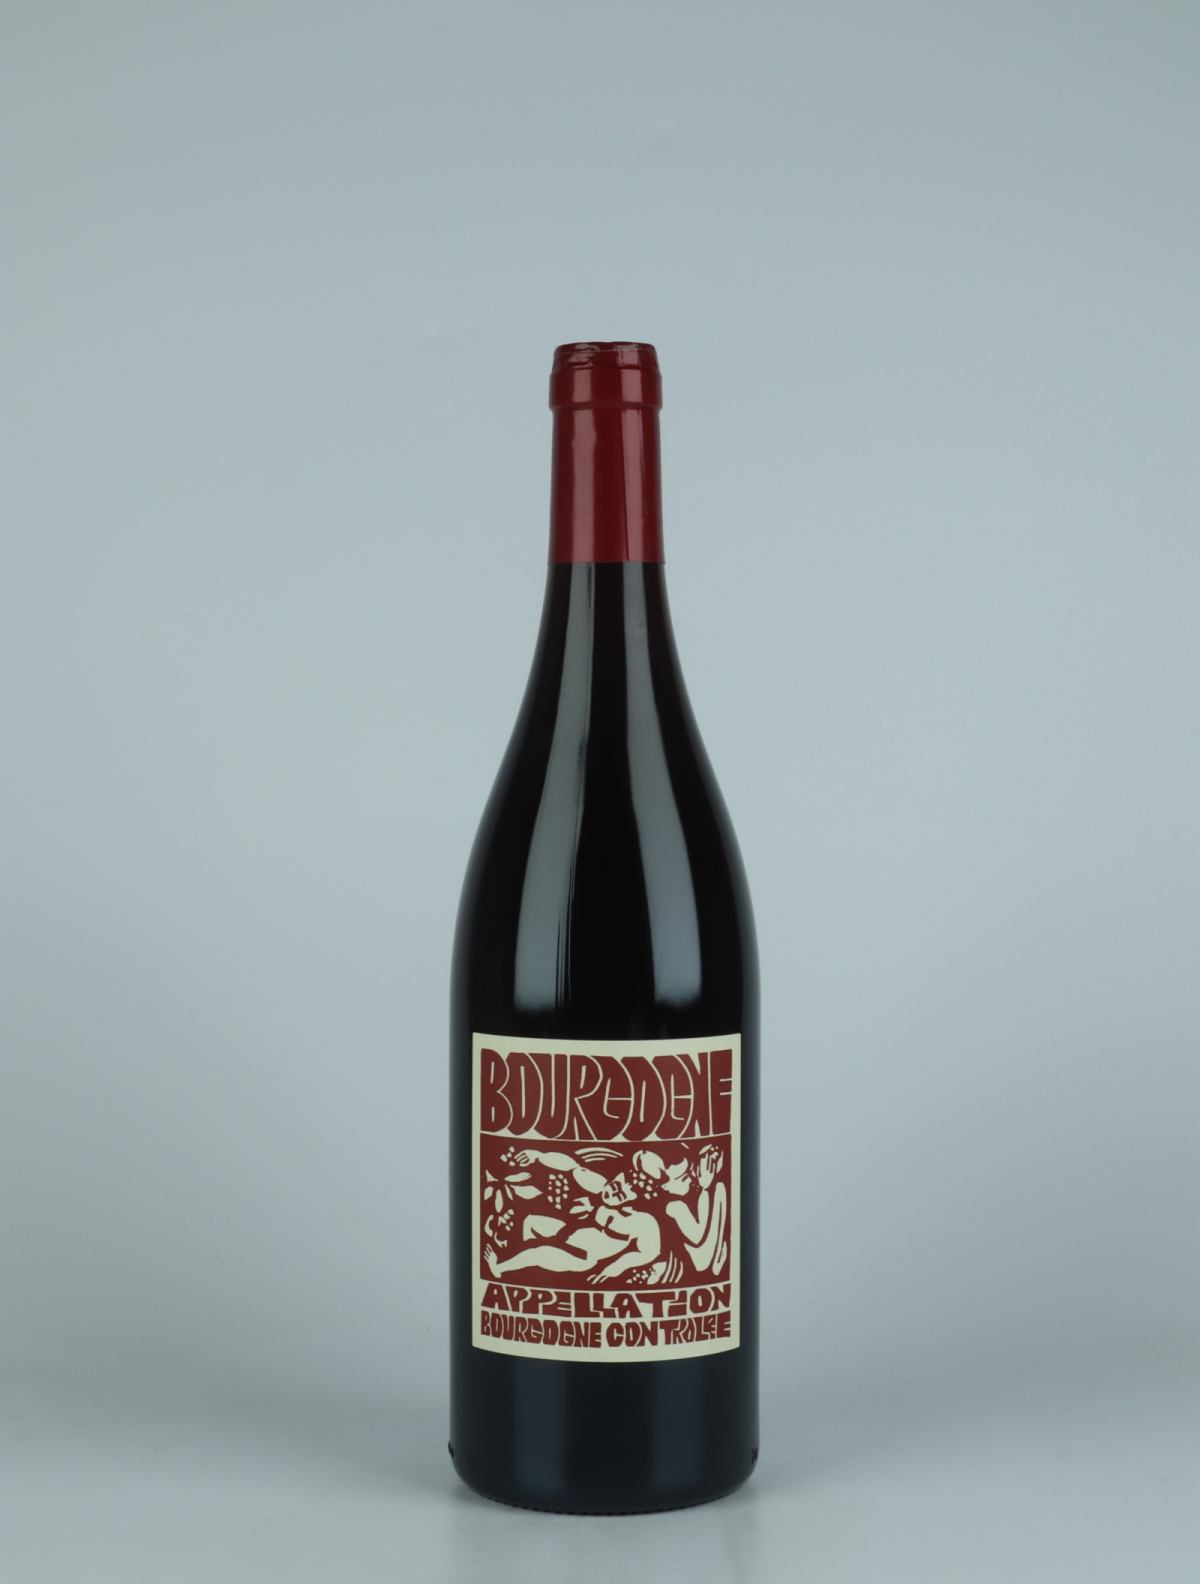 A bottle 2022 Bourgogne Rouge Red wine from La Sœur Cadette, Burgundy in France